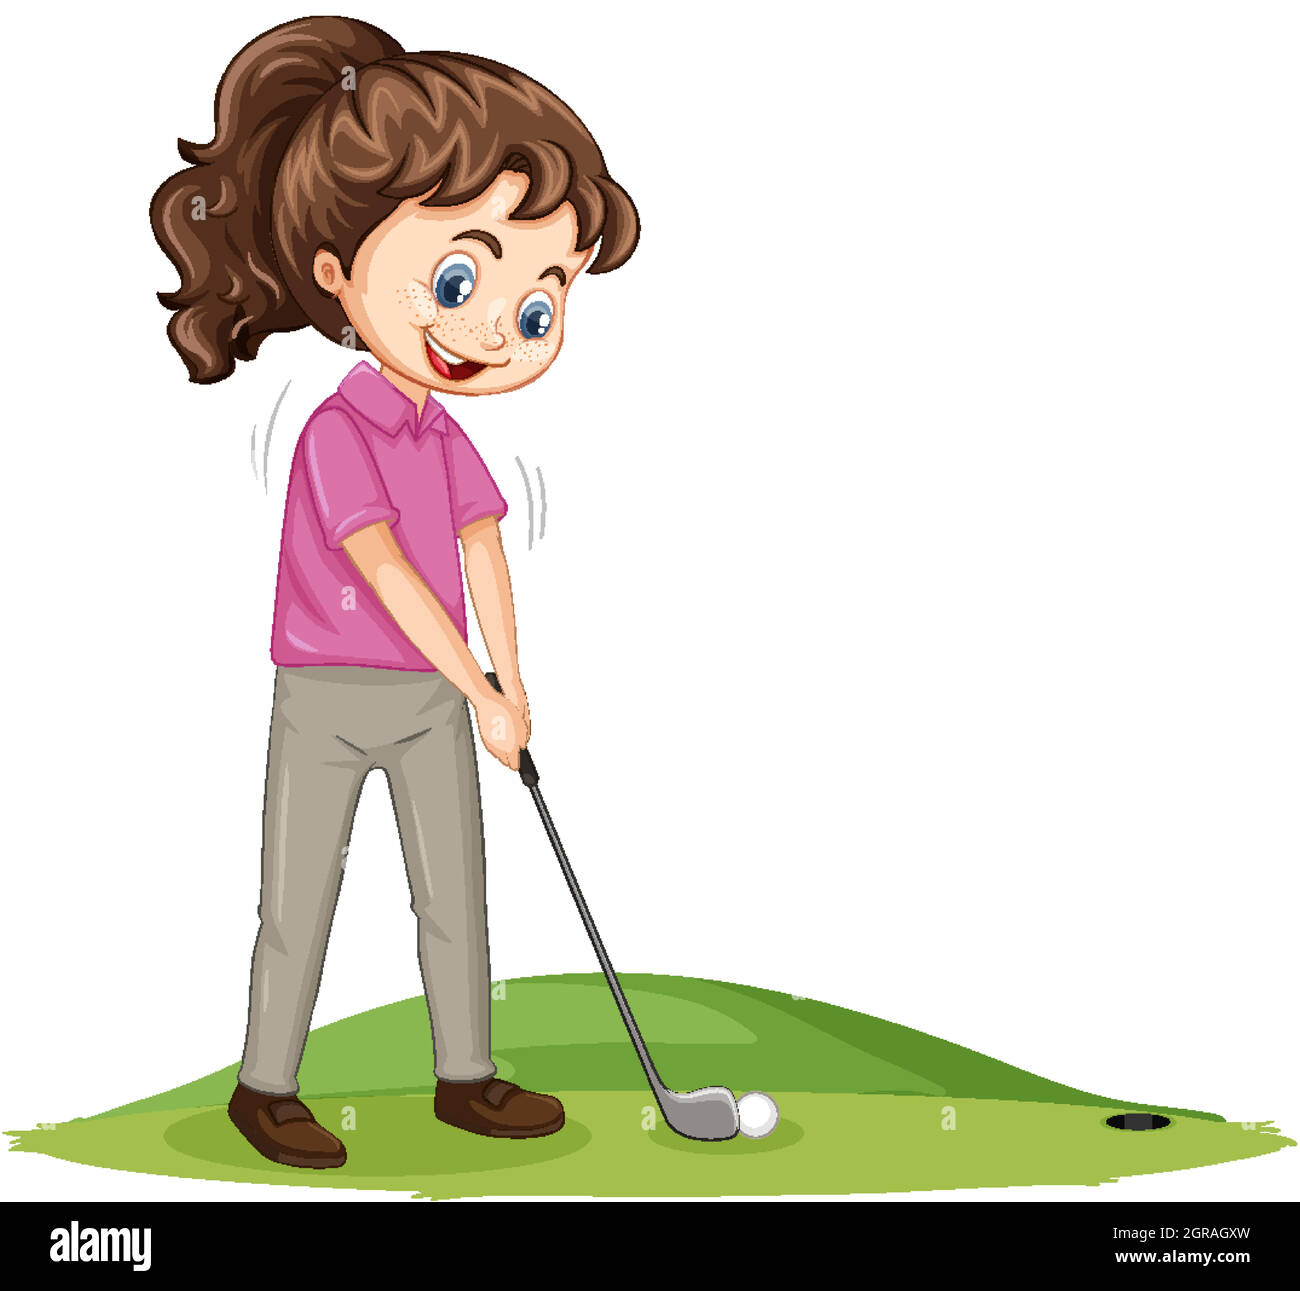 Golf cartoon immagini e fotografie stock ad alta risoluzione - Alamy